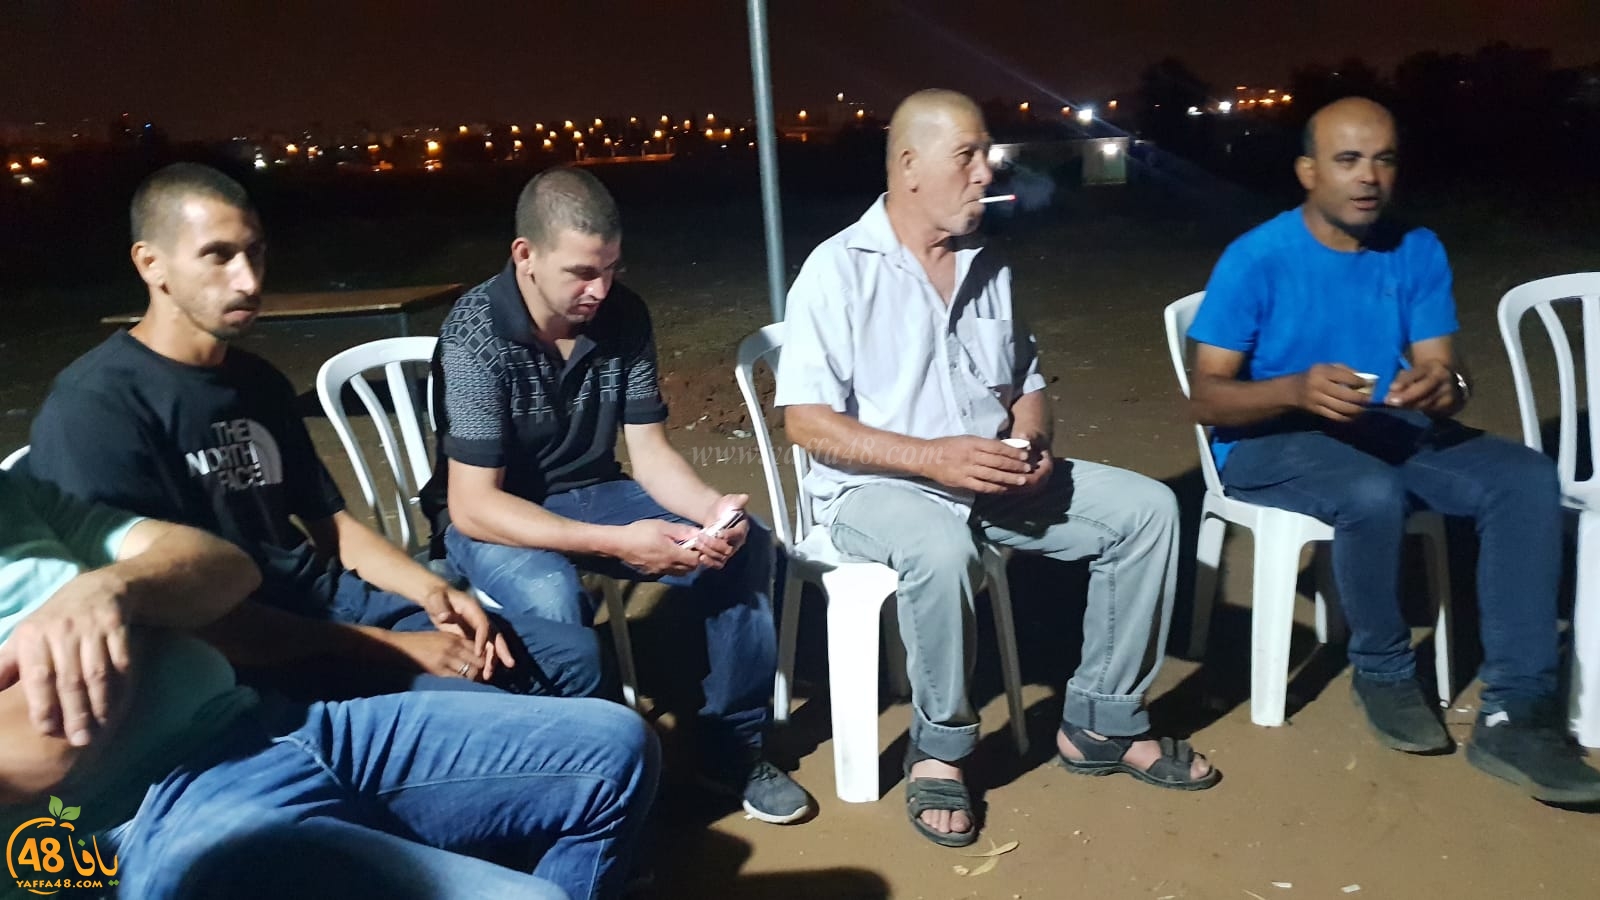  فيديو: عائلة أبو كشك في قرية دهمش تواجه خطر التشريد والتهجير ومناشدات للتضامن وانقاذ العائلة